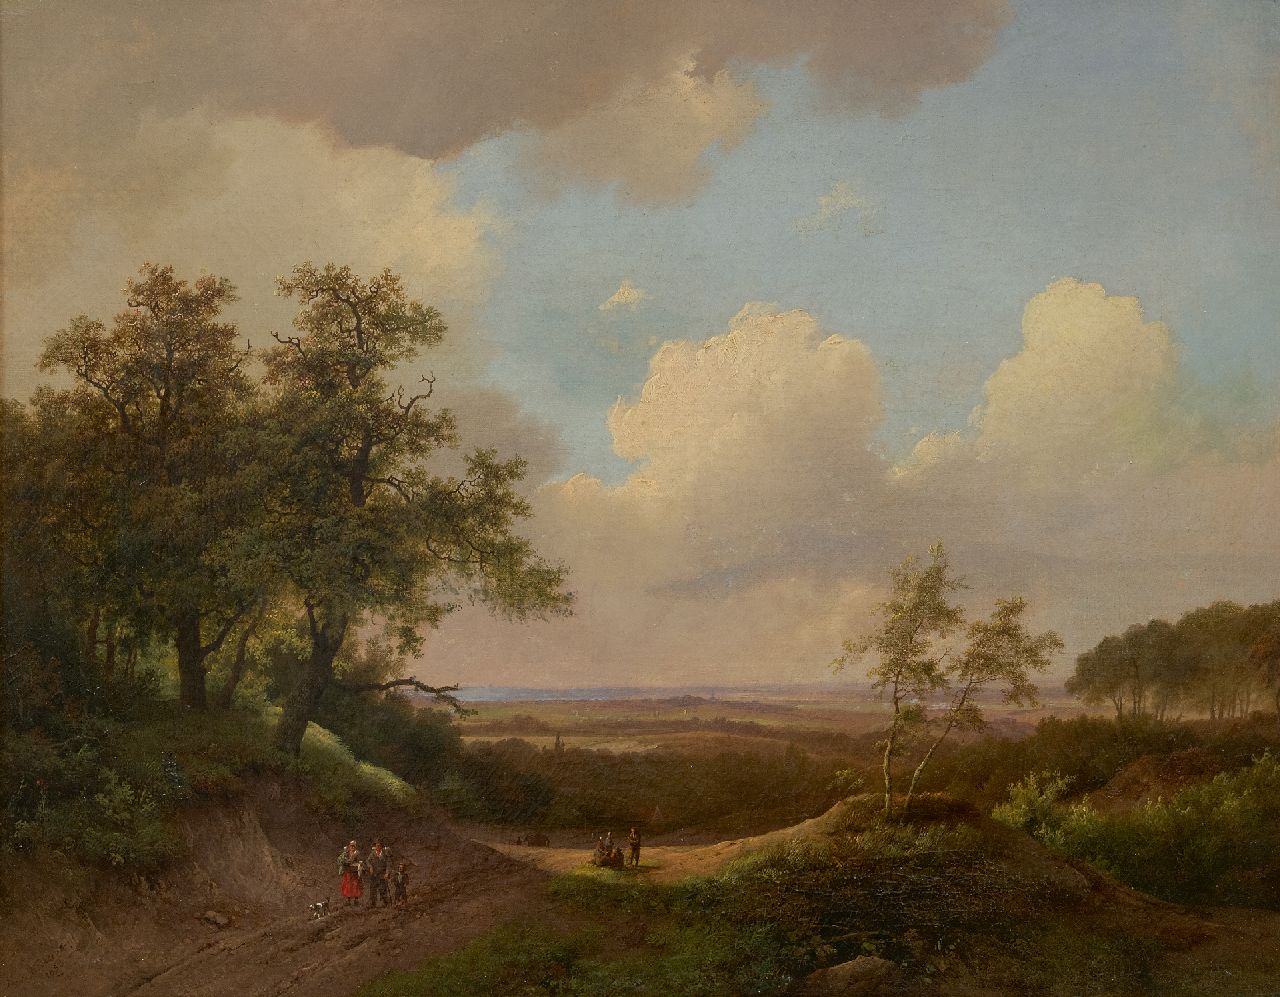 Koekkoek I M.A.  | Marinus Adrianus Koekkoek I | Schilderijen te koop aangeboden | Panoramisch zomerlandschap met landvolk, olieverf op doek 51,0 x 65,0 cm, gesigneerd linksonder en gedateerd 1850